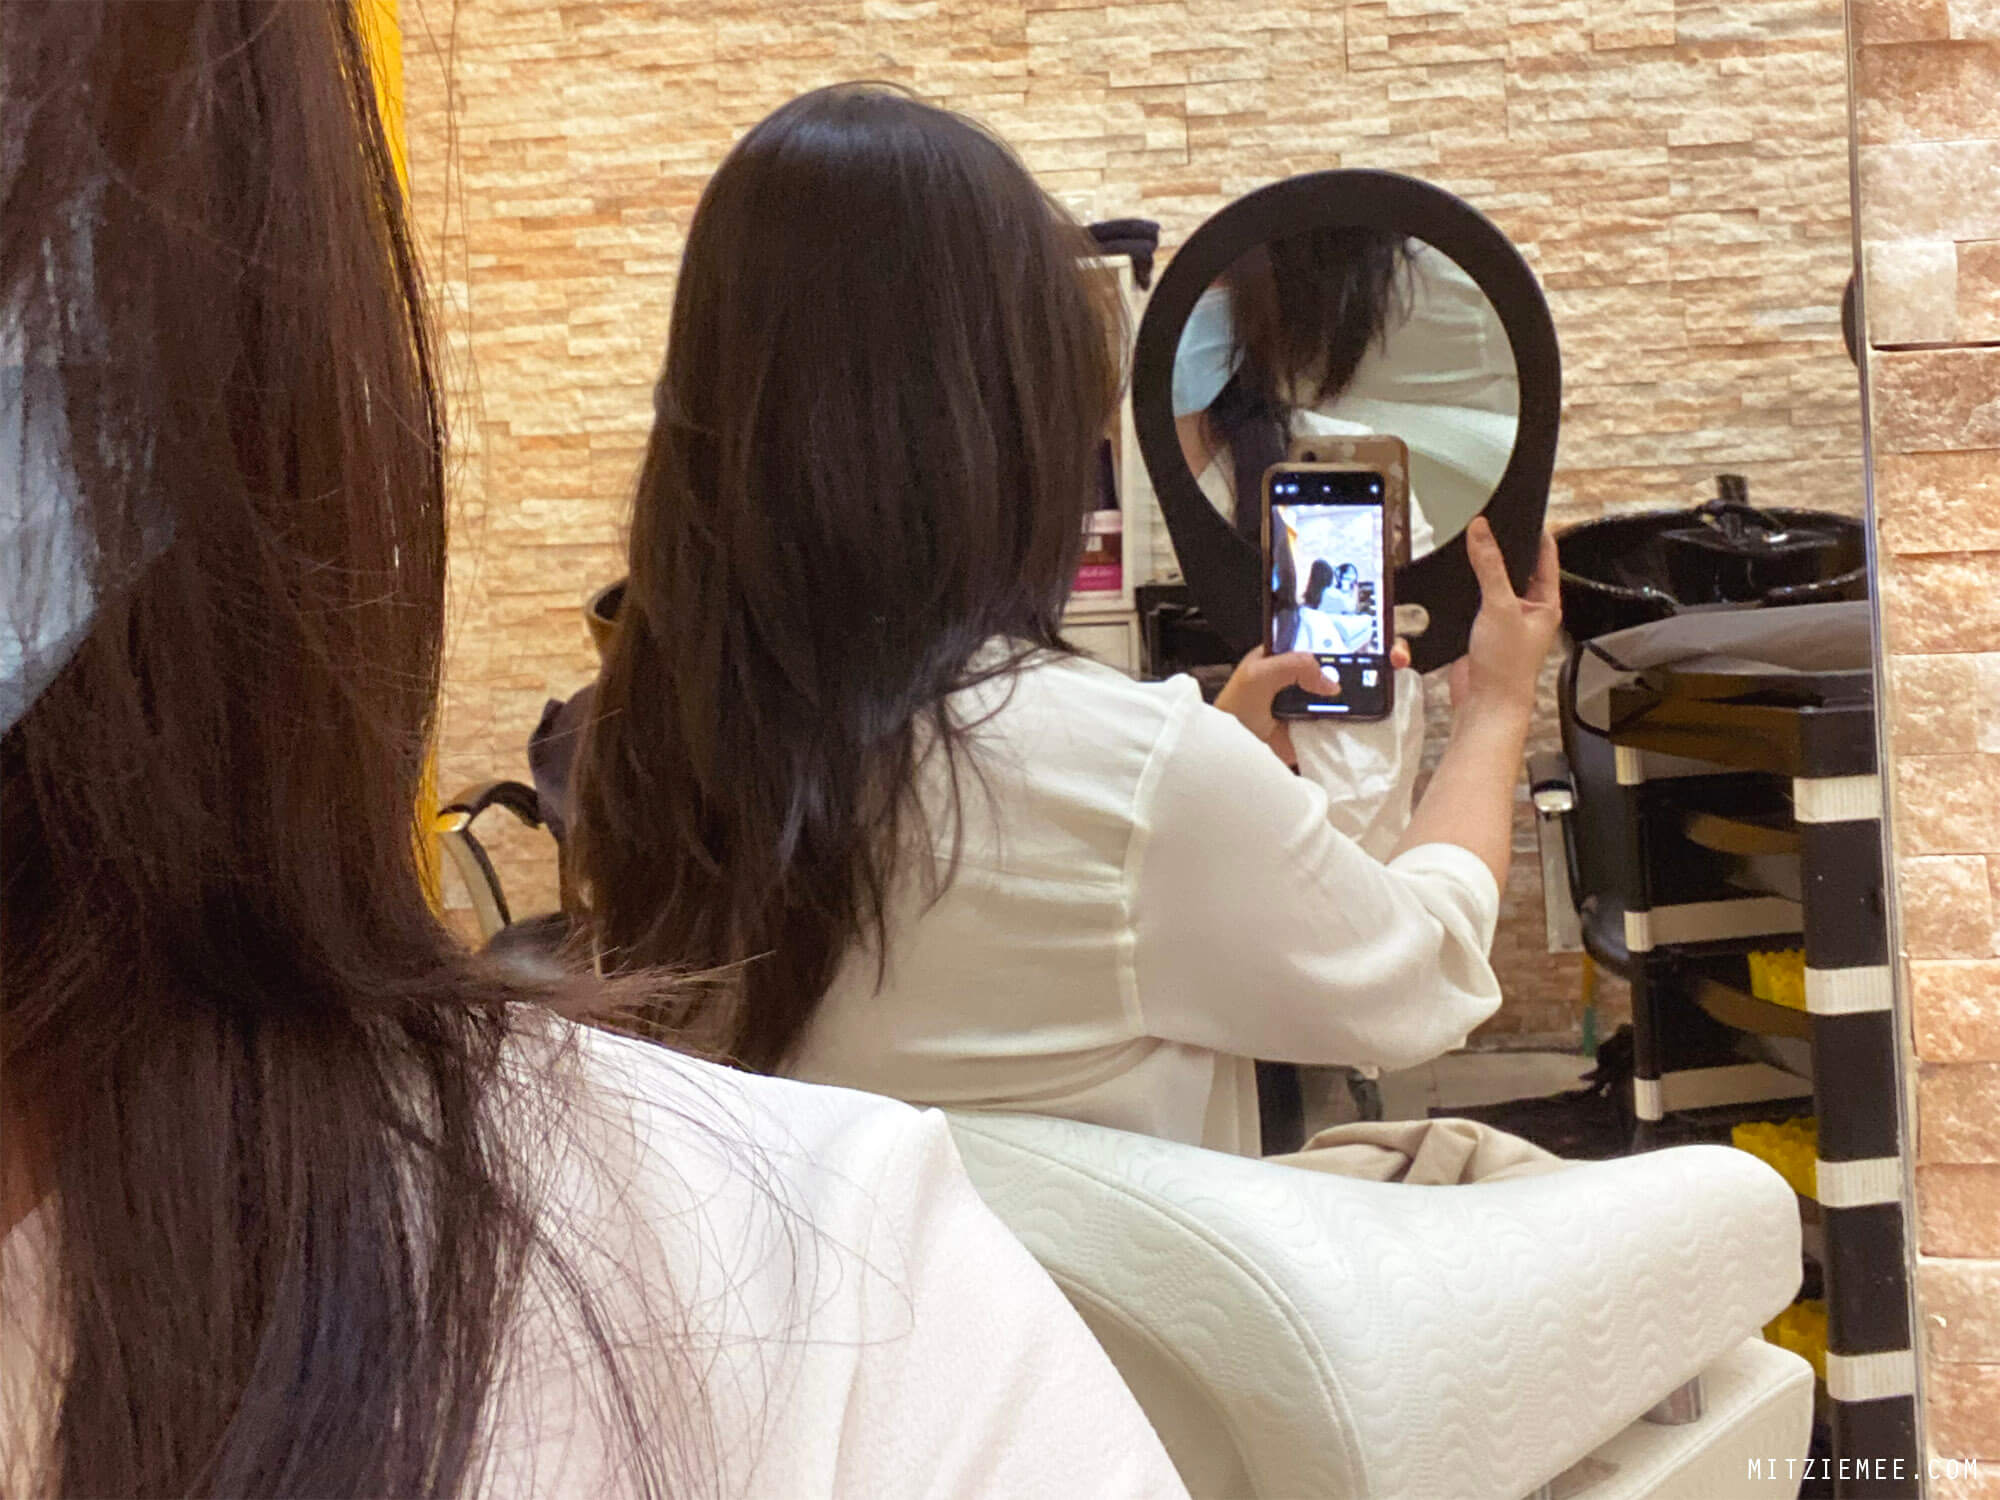 Korean Beauty Salon - A Korean hair salon in Dubai - Dubai Blog - Mitzie Mee